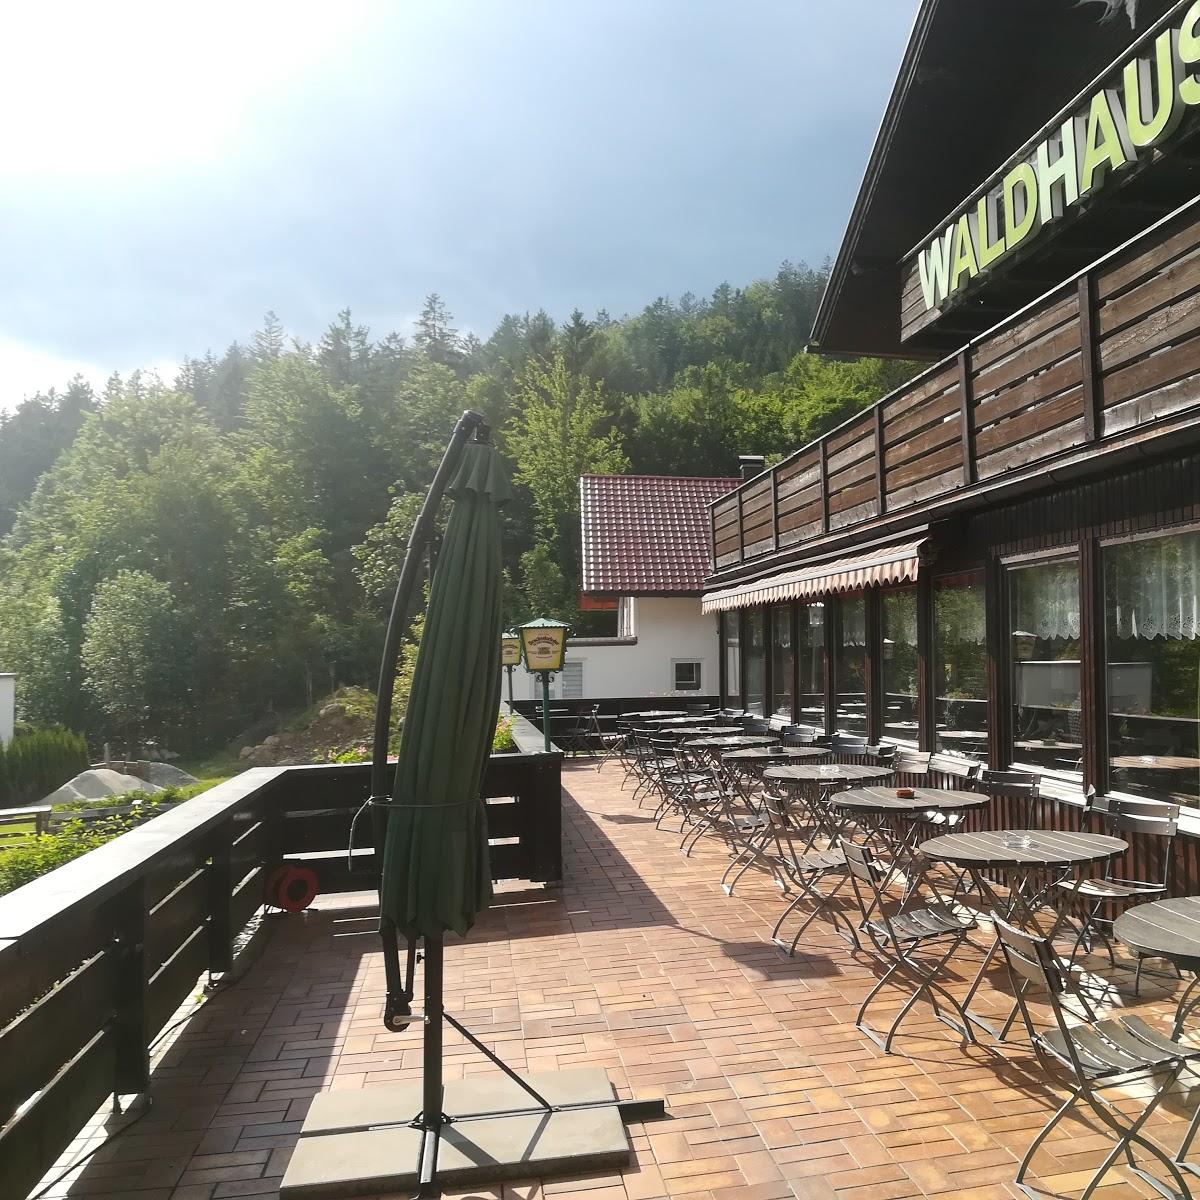 Restaurant "Waldhaus" in Bodenmais